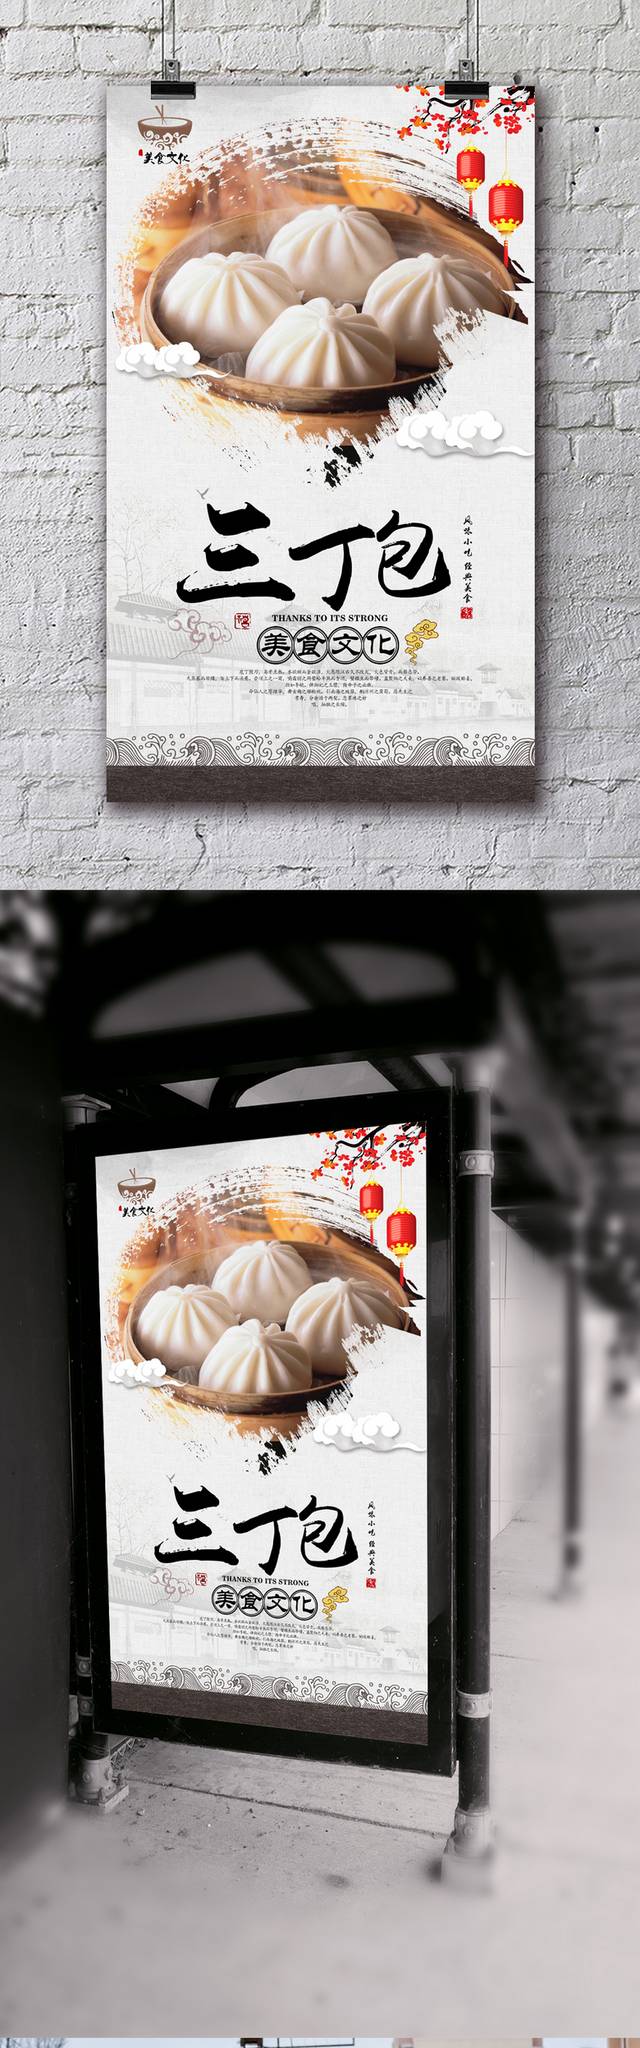 中国风高档三丁包宣传海报设计